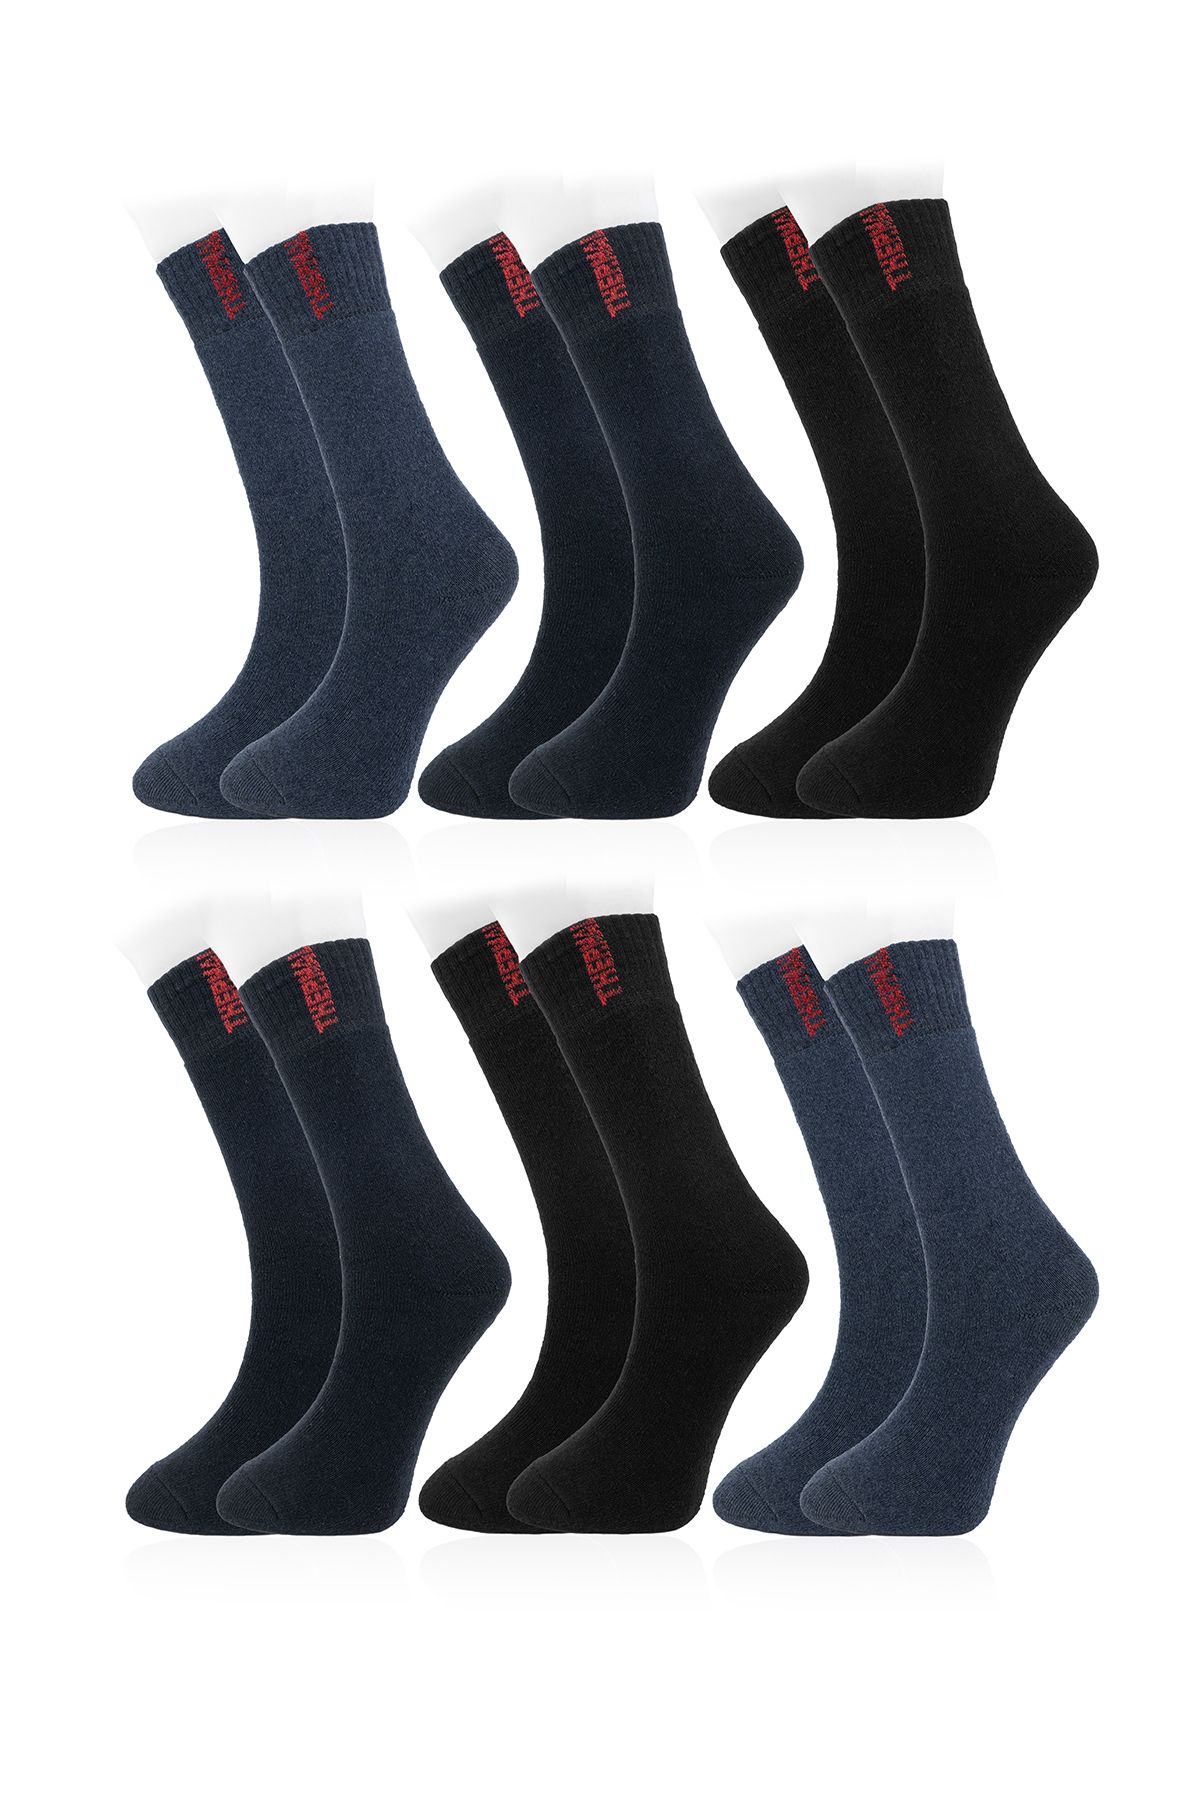 Line Smart 6'lı Kadın Karışık Renk Termal Yüksek Kaliteli Yumuşak Dayanıklı Soket Çorap